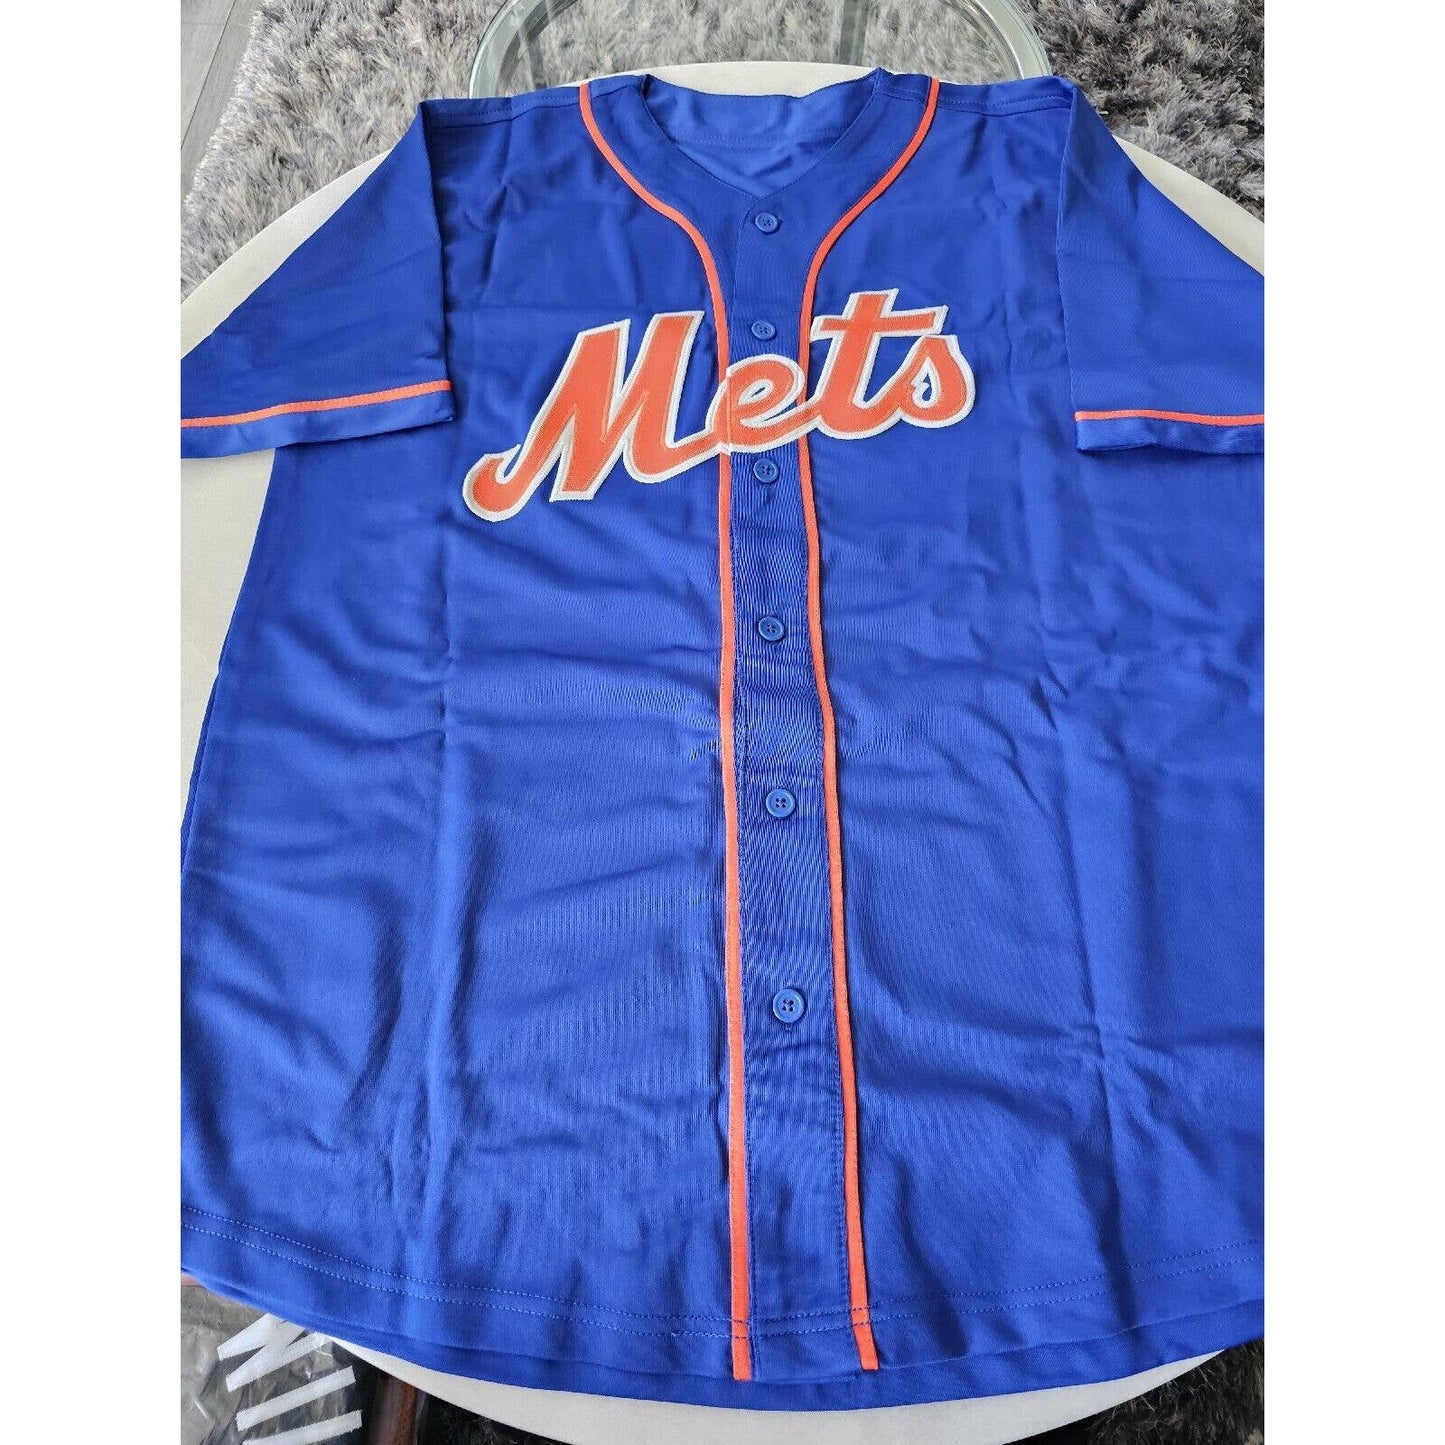 Lenny Dykstra Autographed/Signed Jersey JSA COA New York Mets